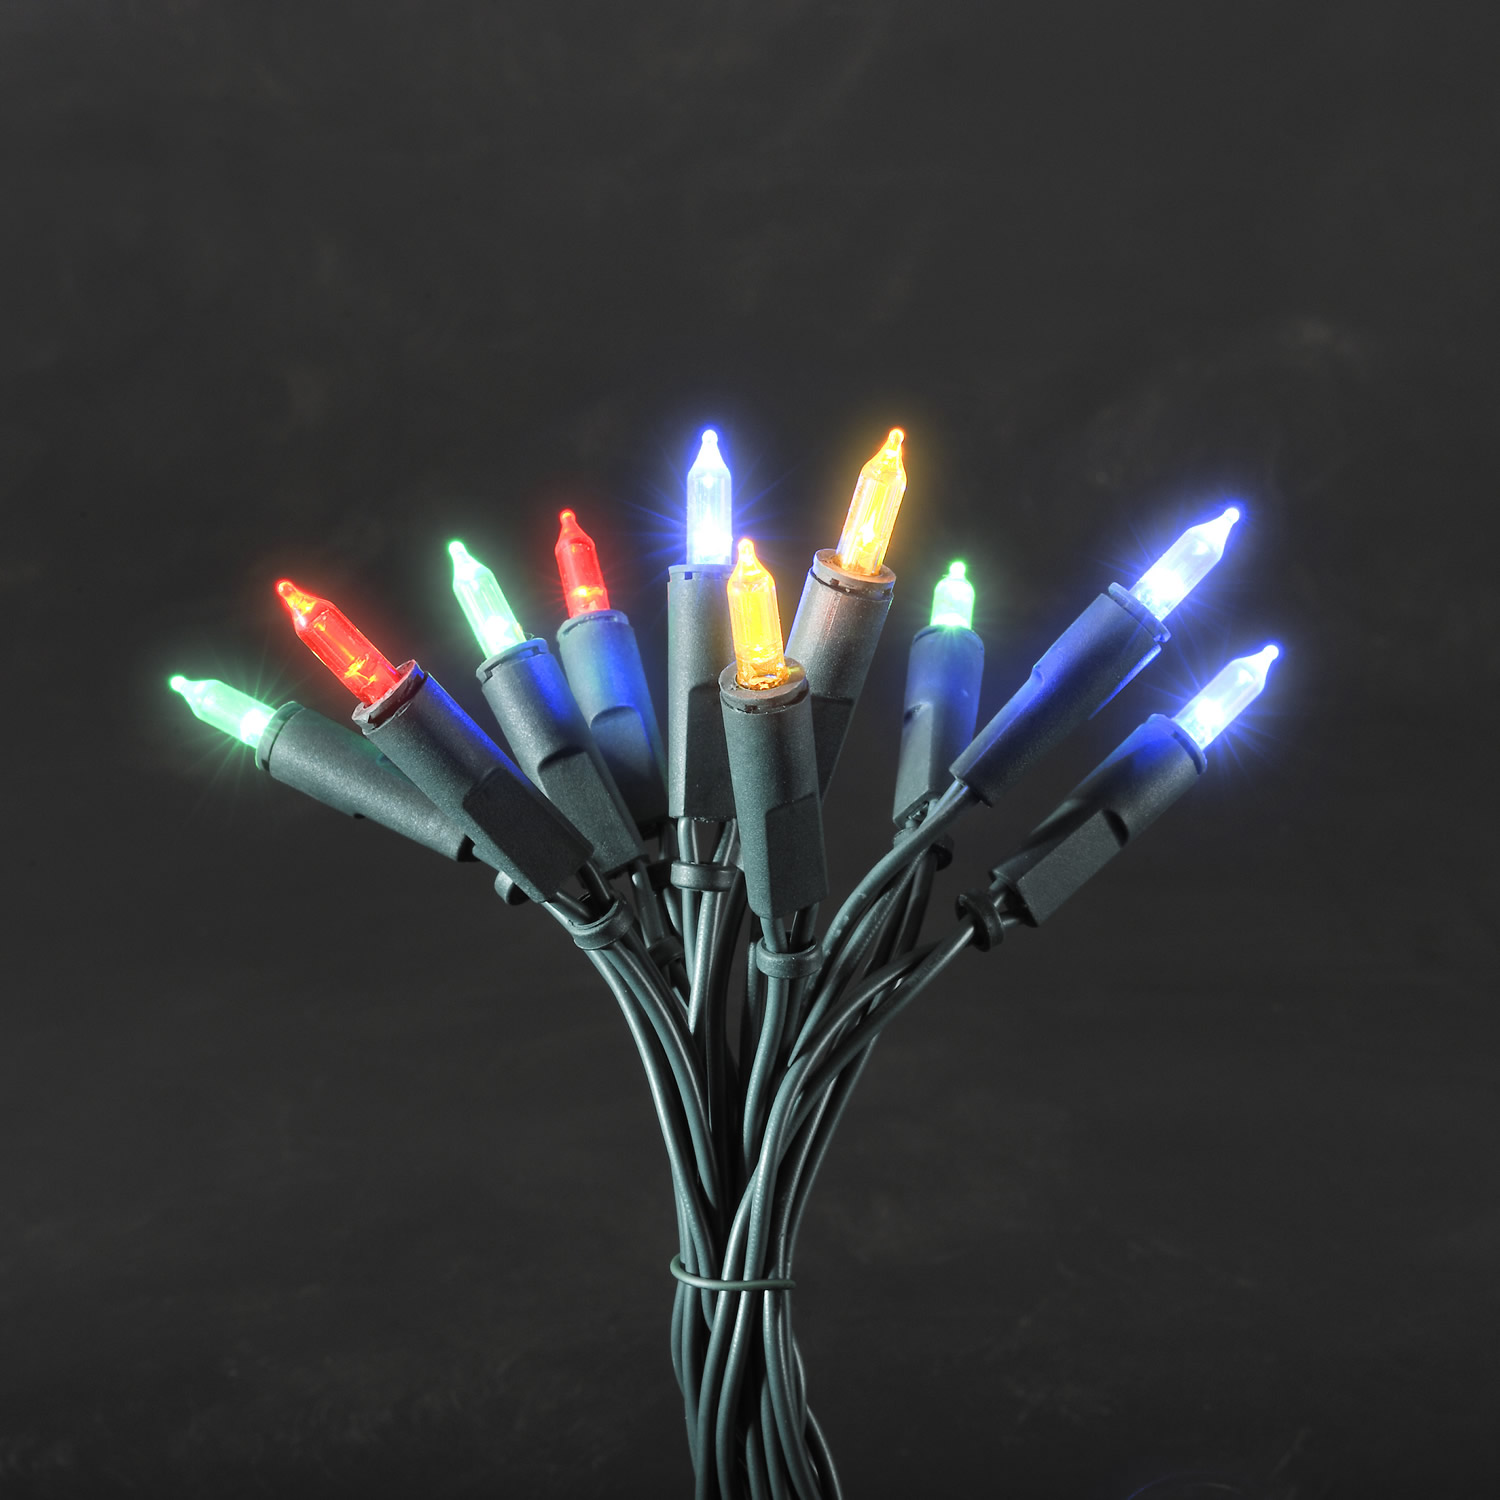 Sirag luminos cu 100 LED-uri in forma de beculet , 16.3m lungime